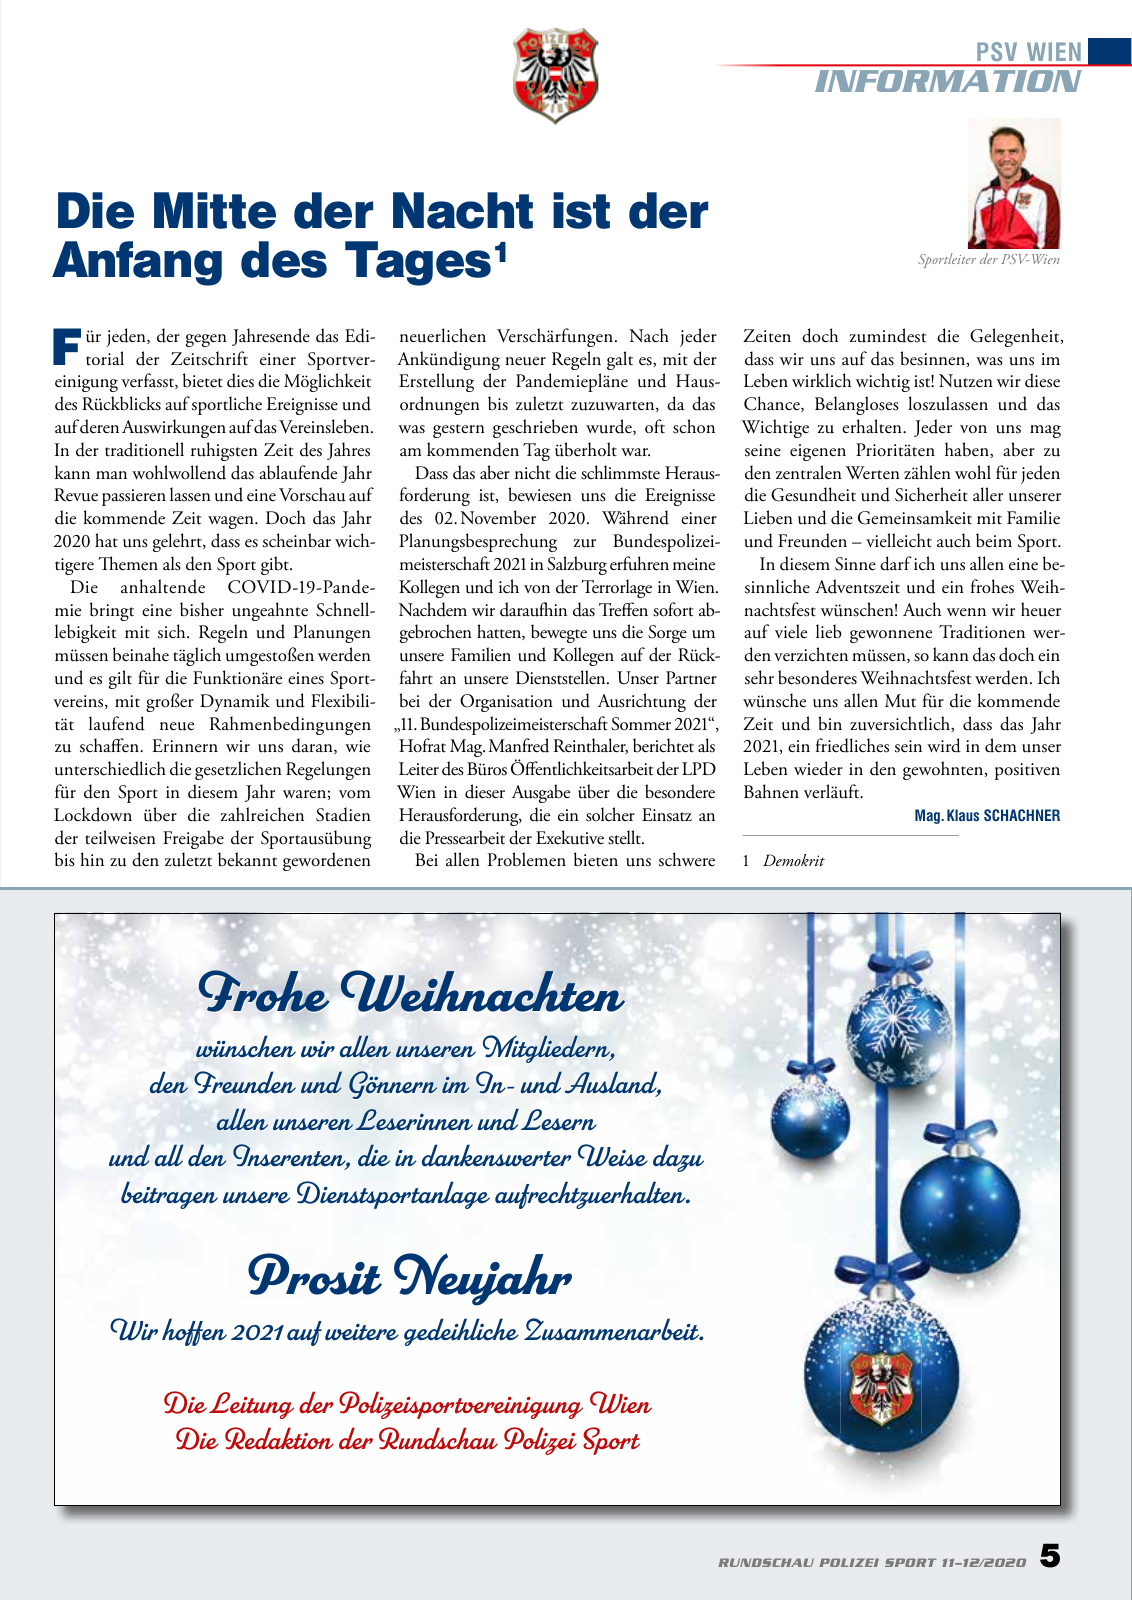 Vorschau Rundschau Polizei Sport 11-12/2020 Seite 5